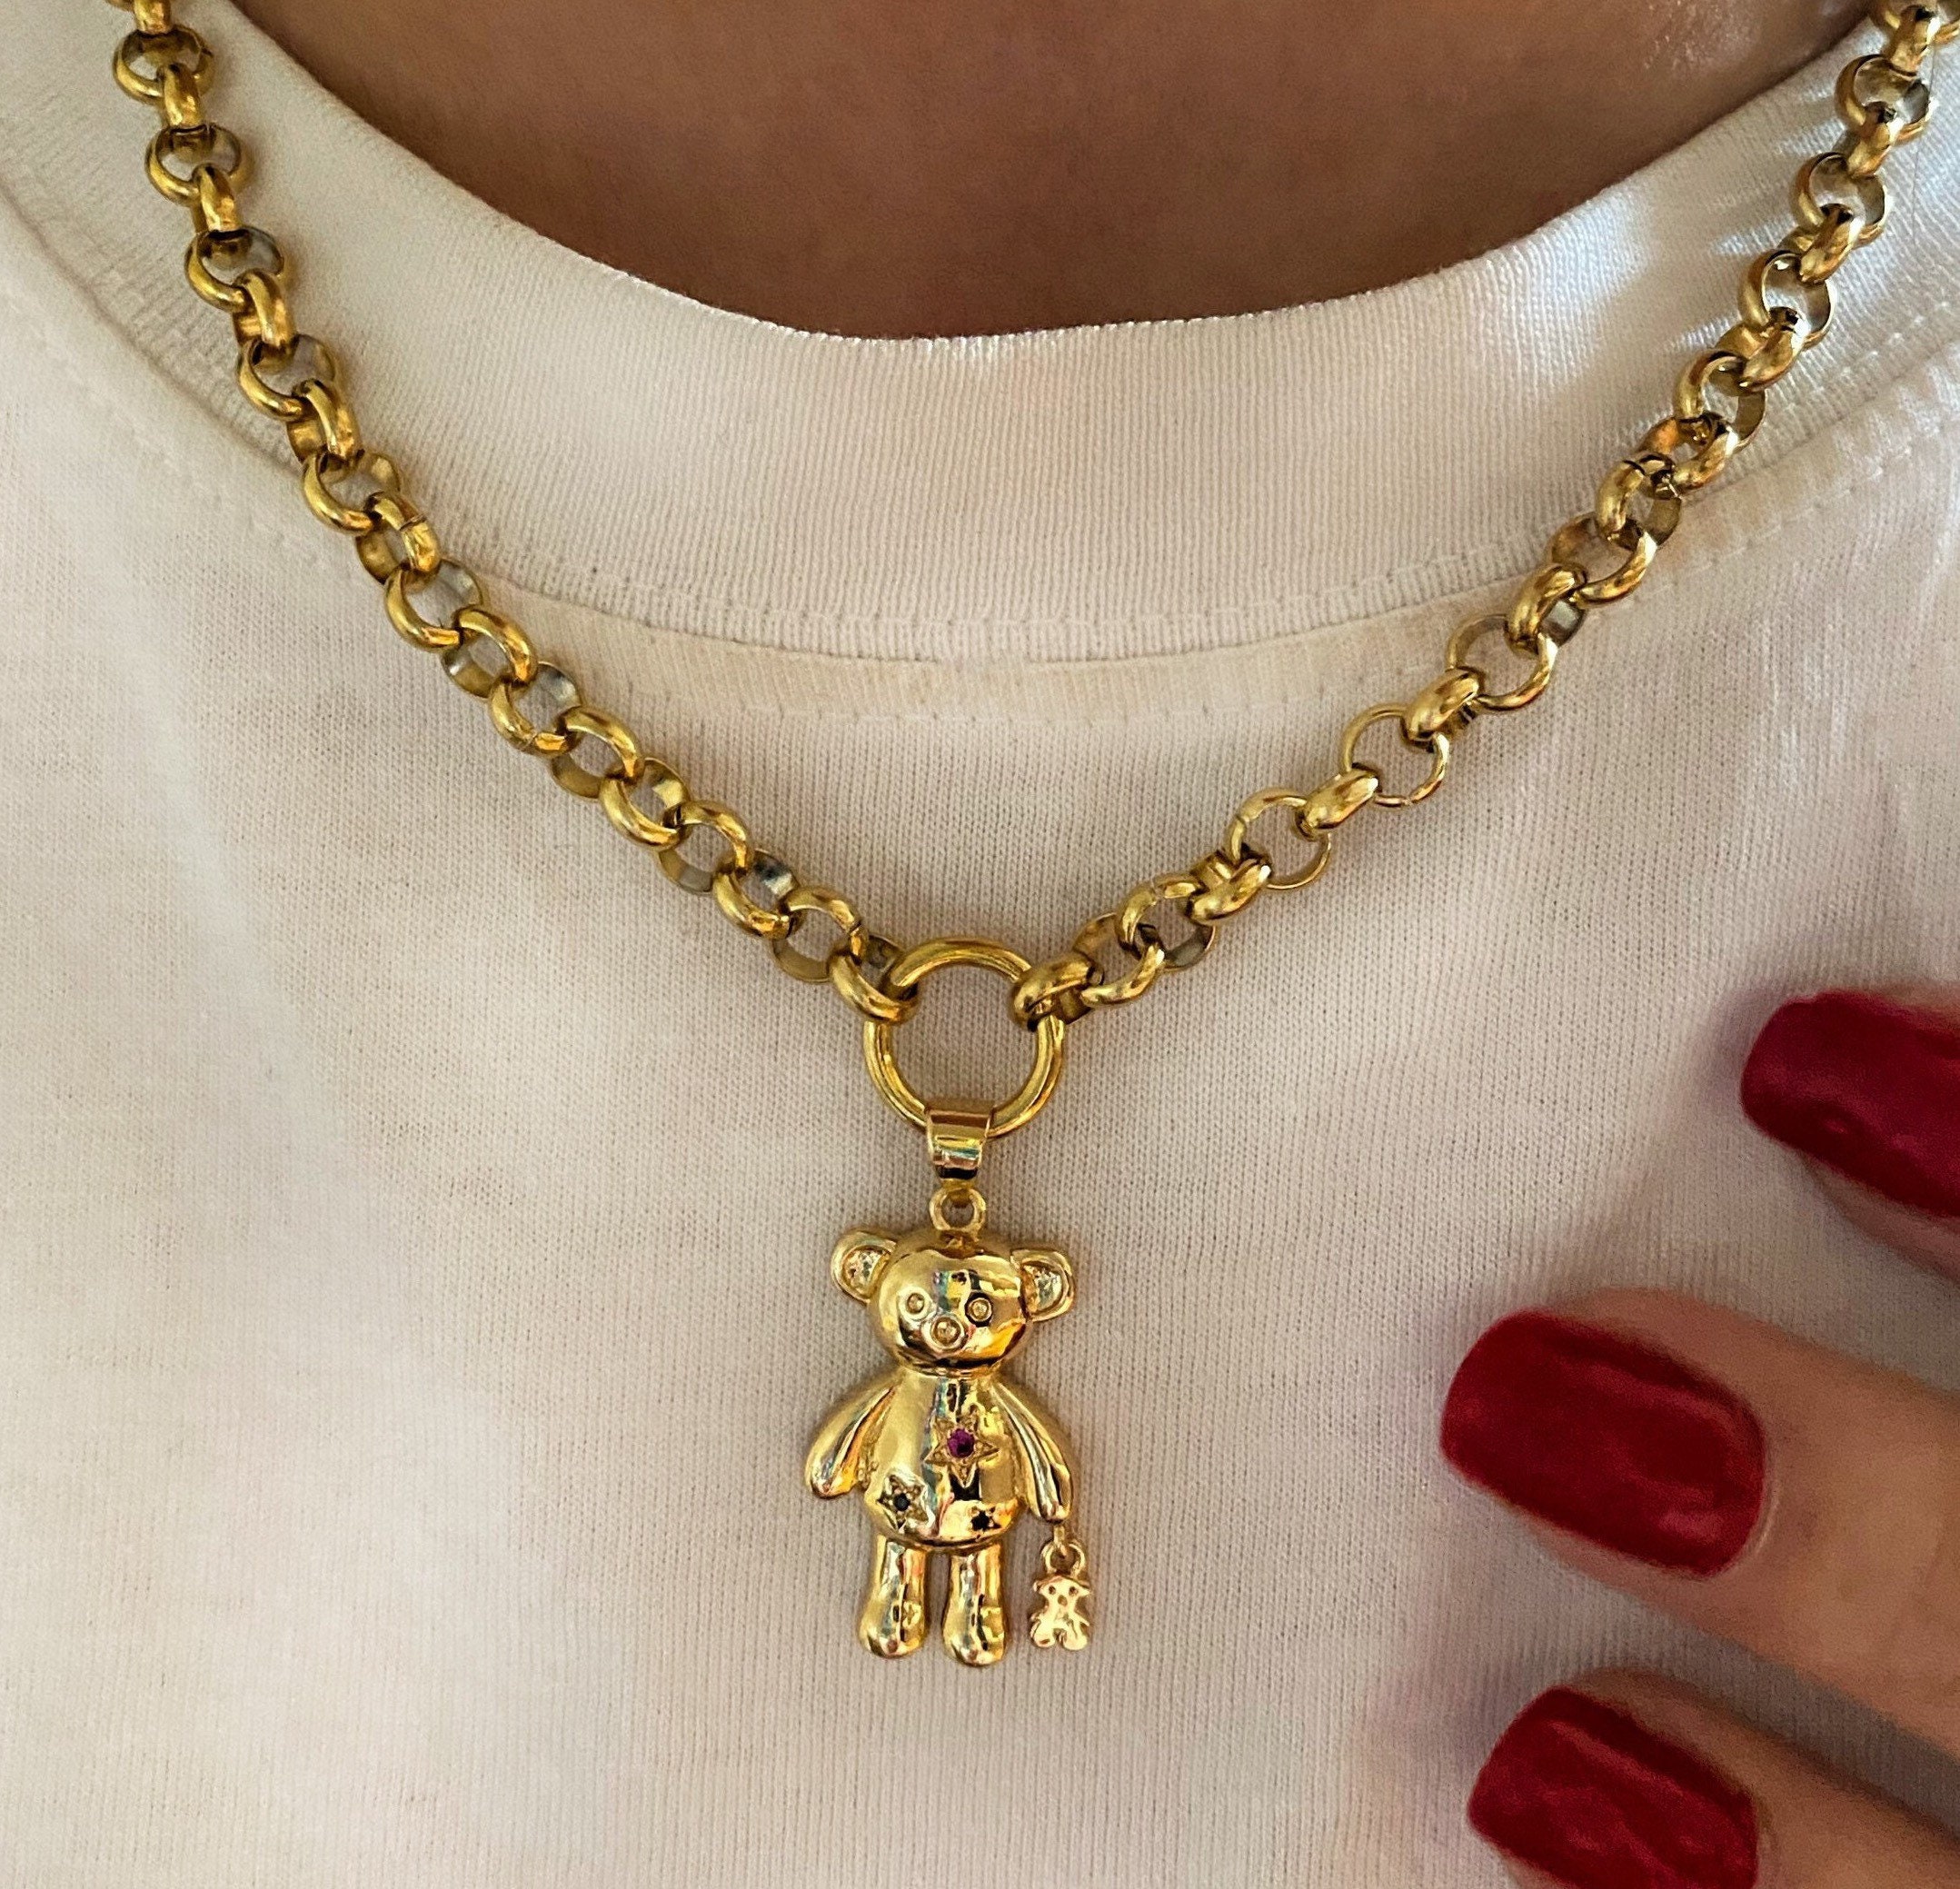 Teddy bear gold pendant - Monte Cristo